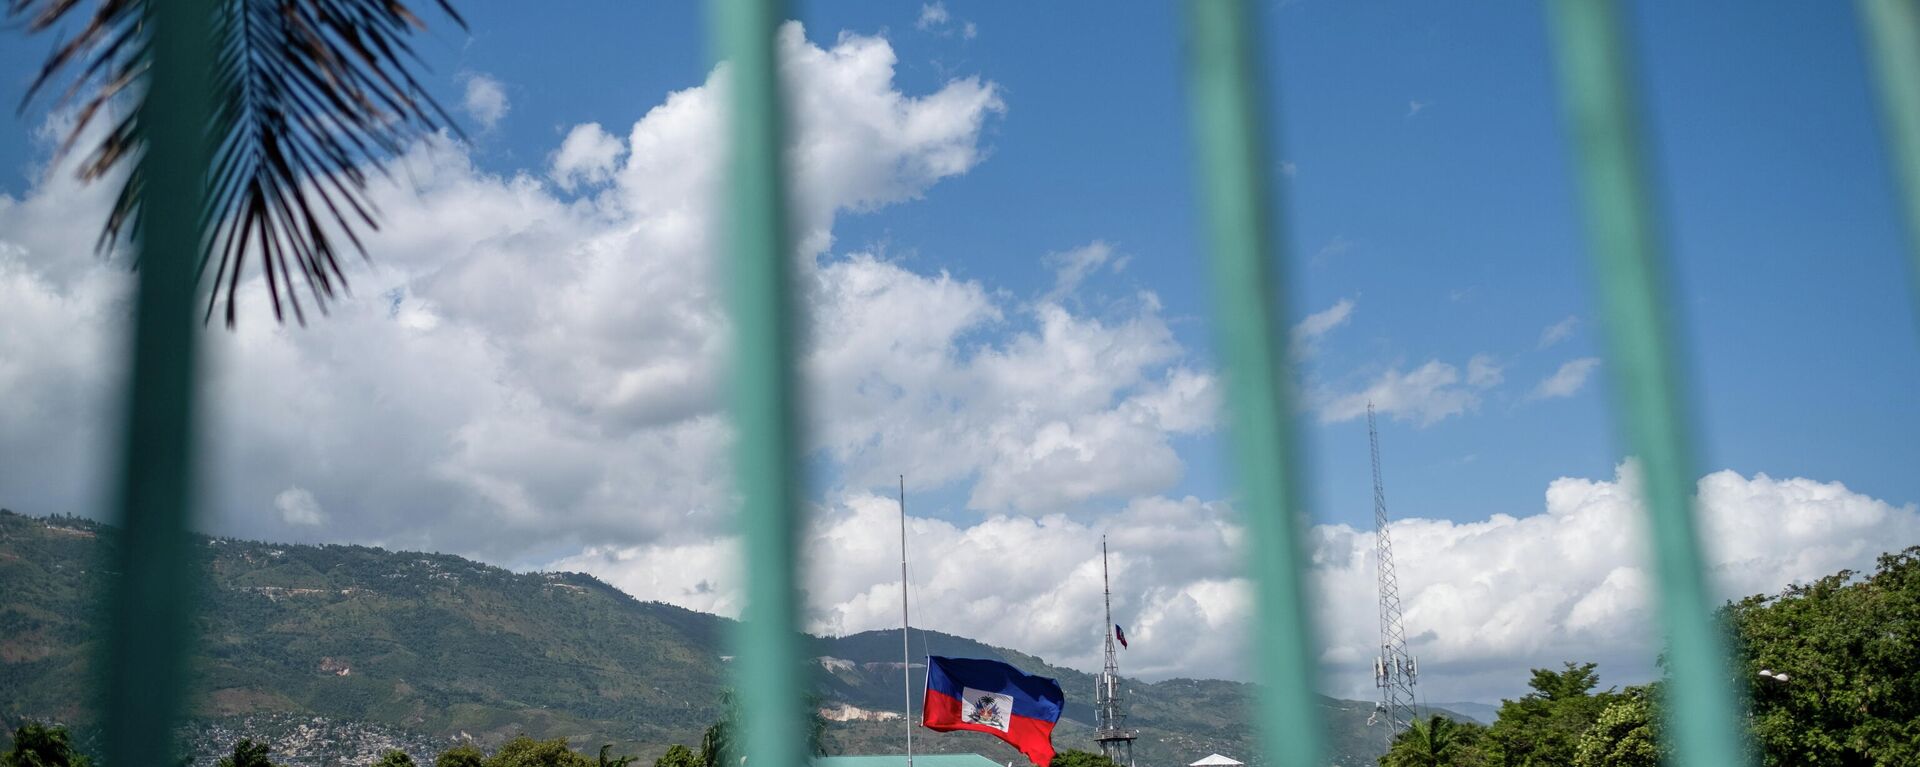 La bandera nacional de Haití  - Sputnik Mundo, 1920, 13.08.2021